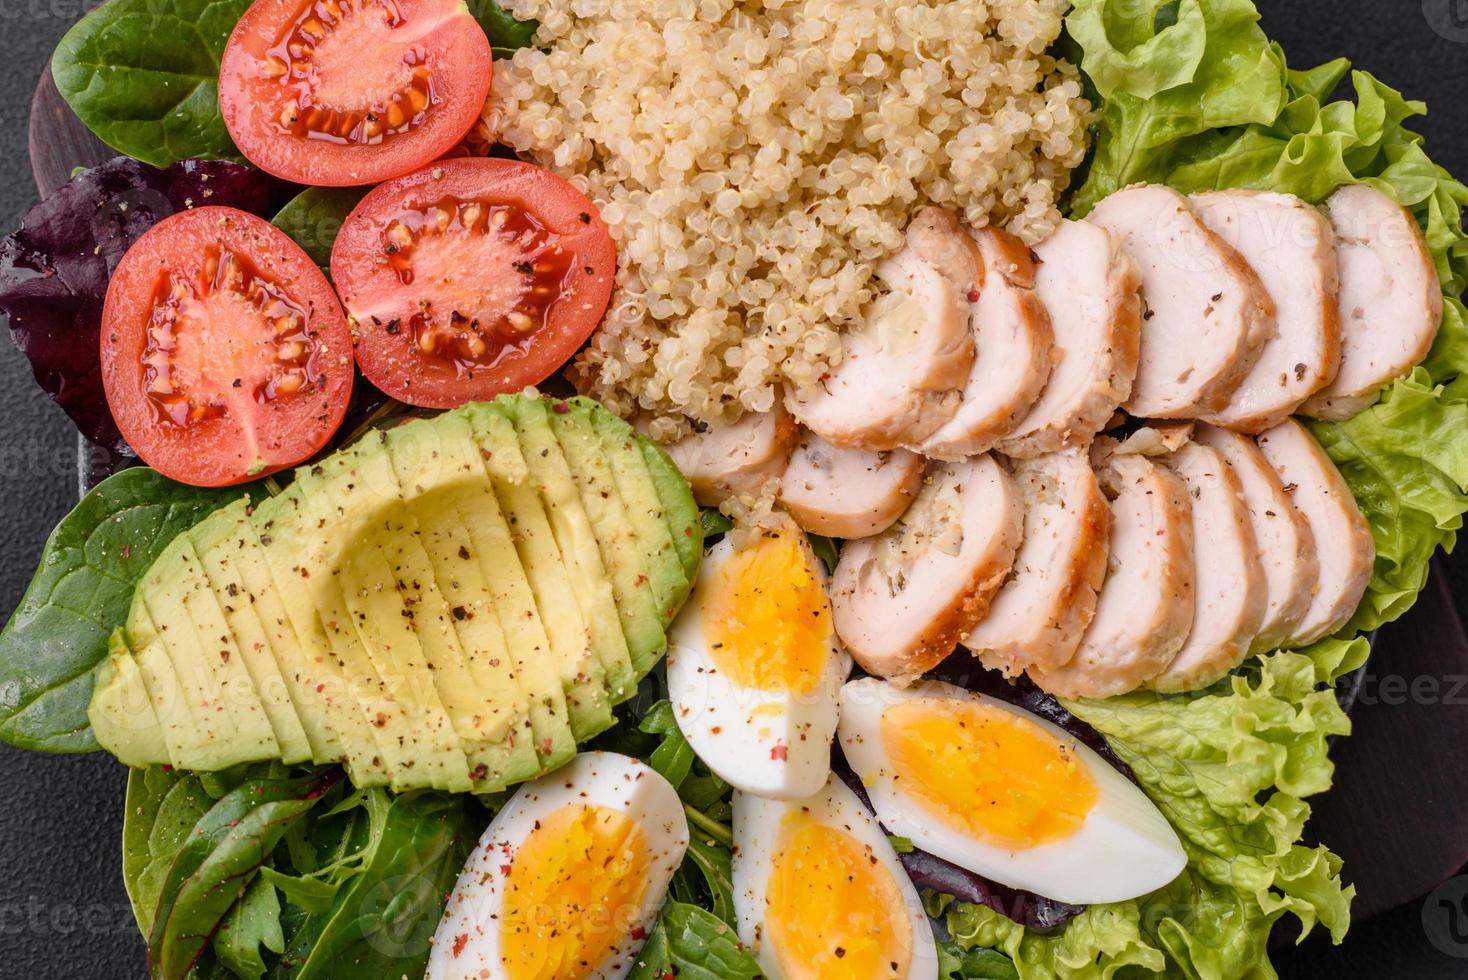 delizioso salutare pranzo consistente di pollo, avocado, quinoa, uova e pomodori foto